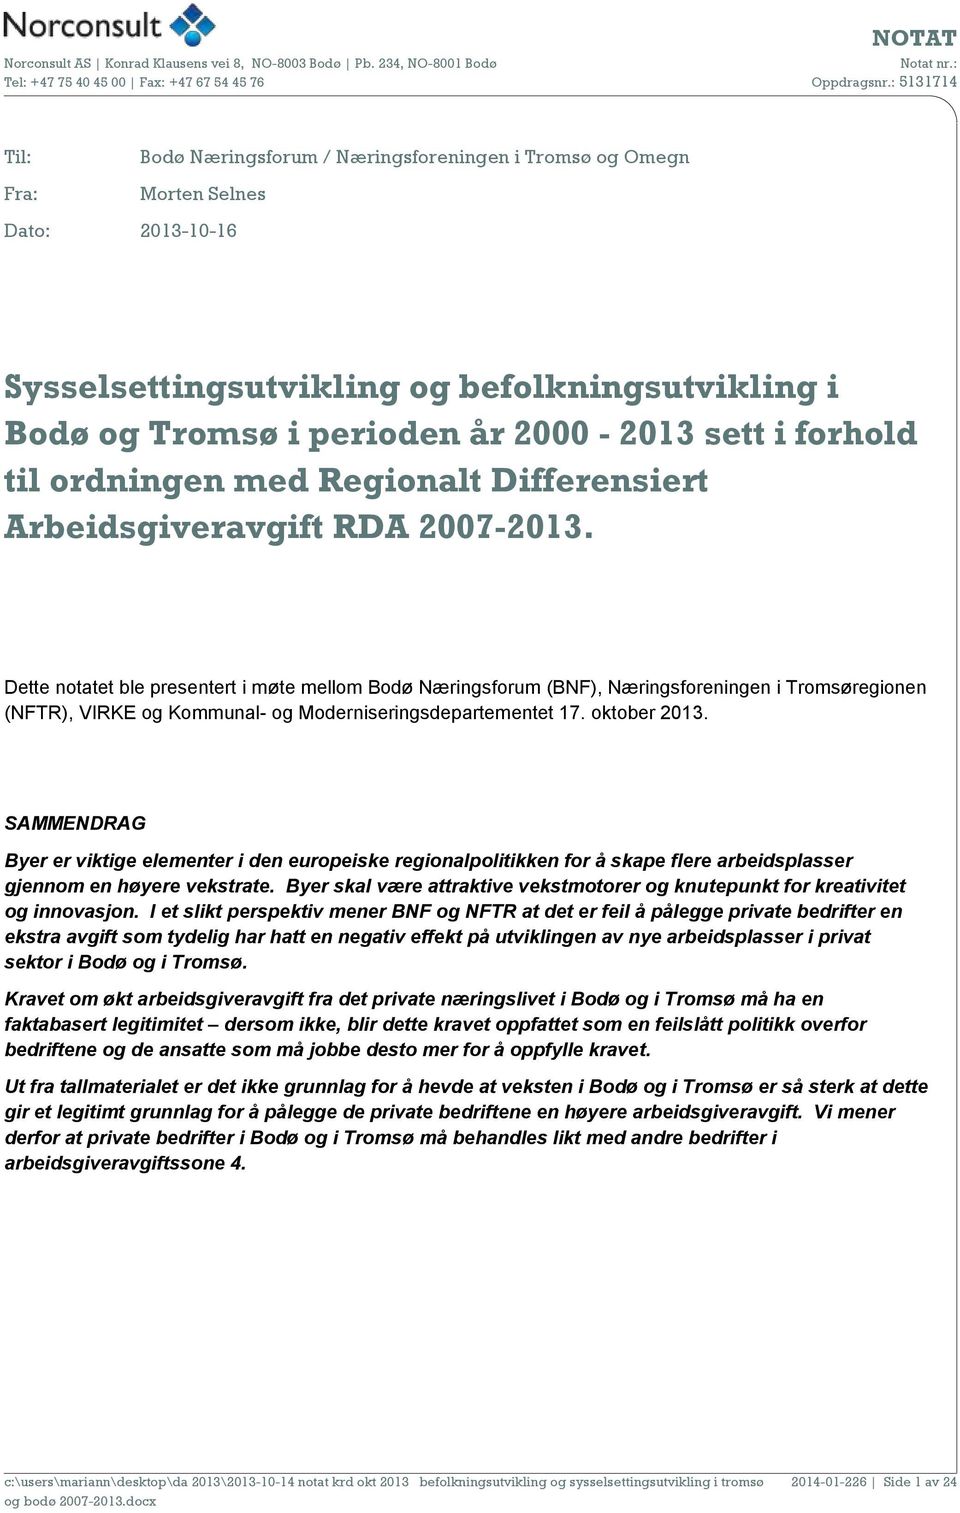 Dette notatet ble presentert i møte mellom Bodø Næringsforum (BNF), Næringsforeningen i Tromsøregionen (NFTR), VIRKE og Kommunal- og Moderniseringsdepartementet 17. oktober 2013.